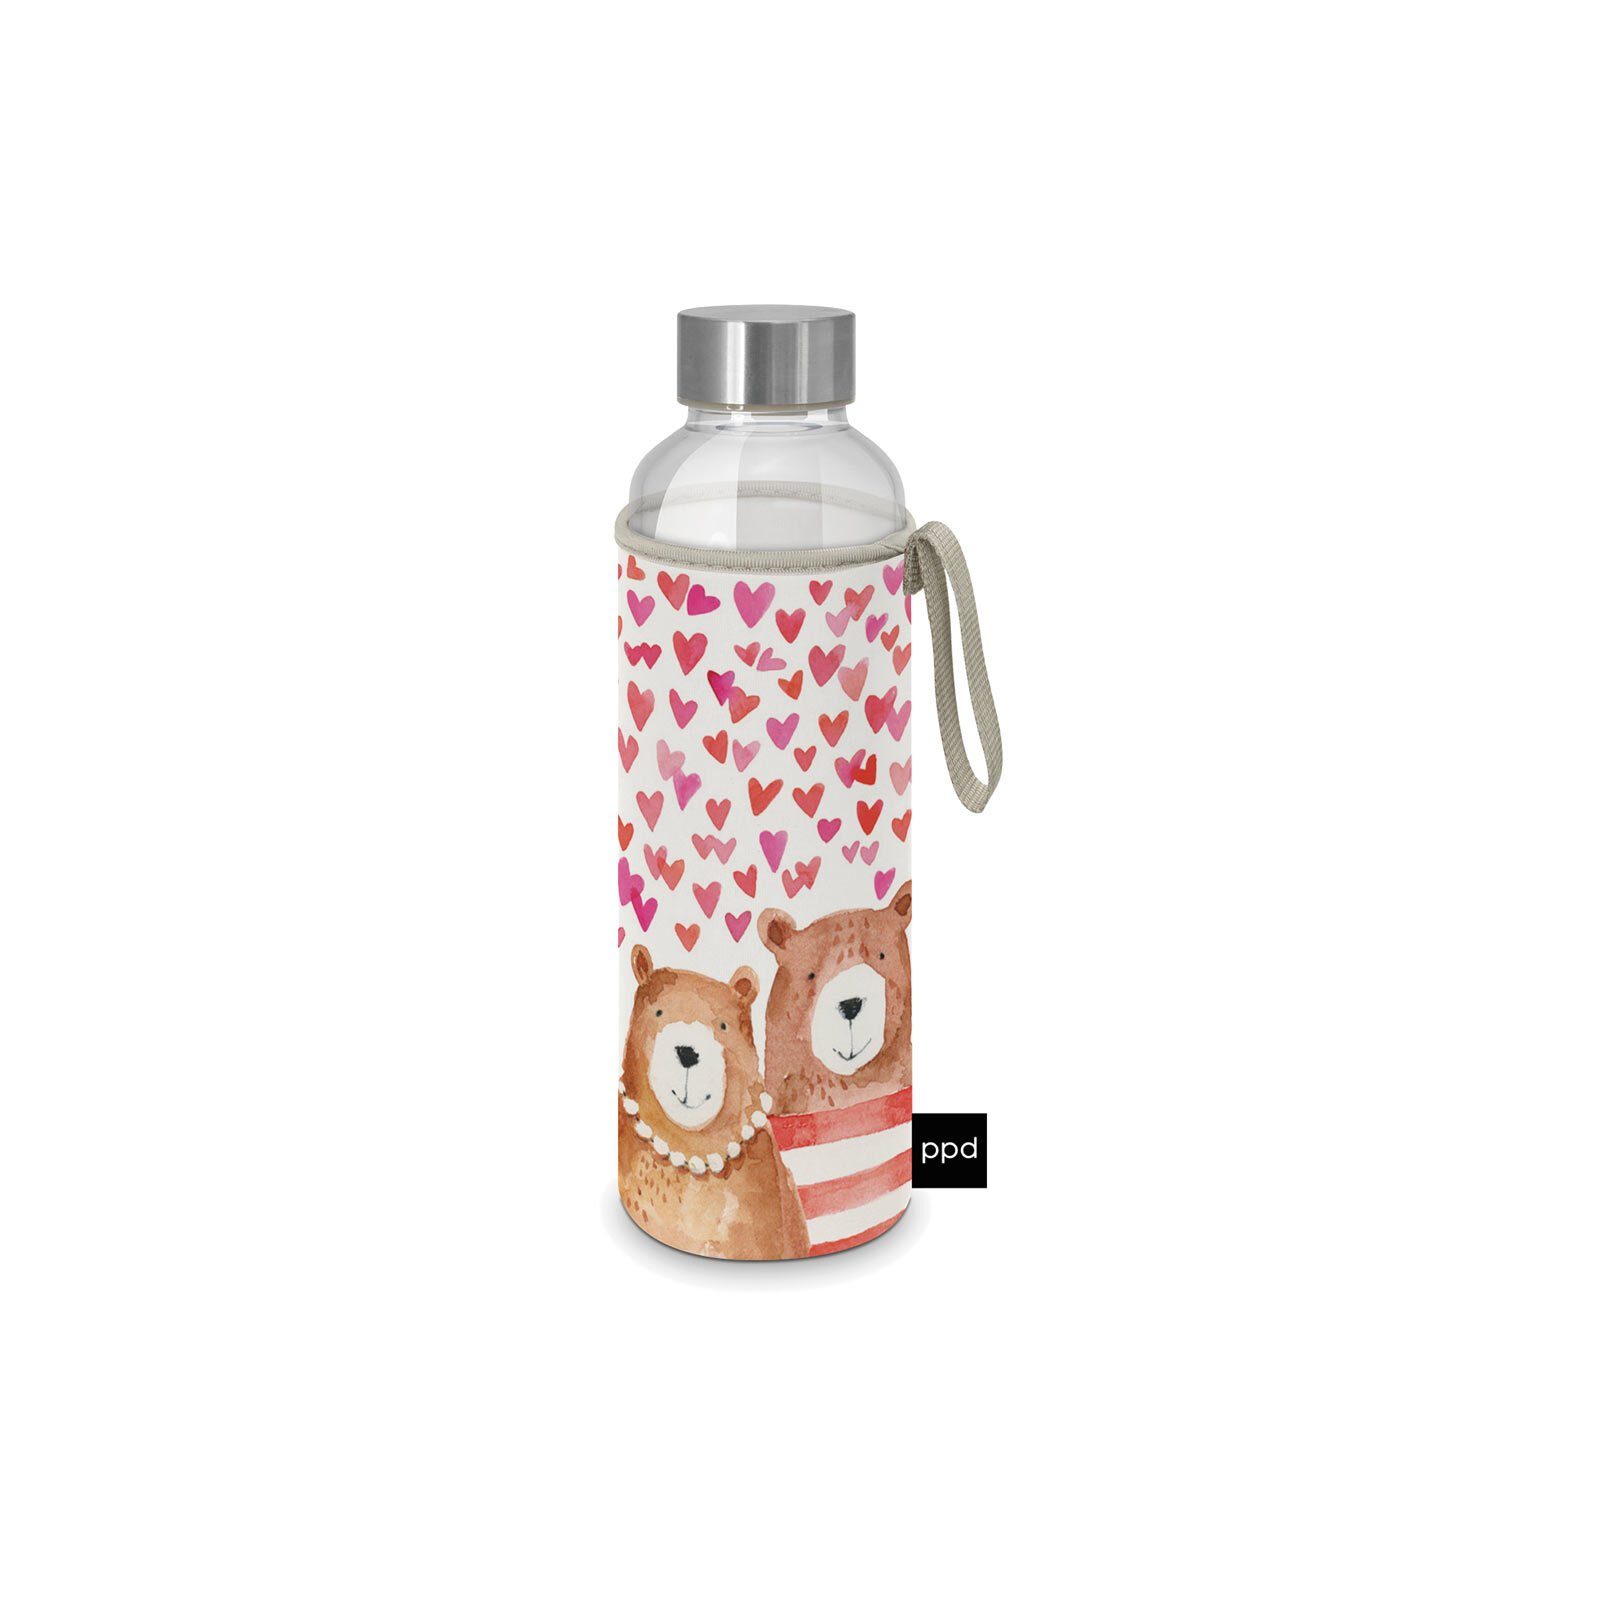 ml Bears Glasflasche Schutzhülle mit Love Trinkflasche 500 PPD